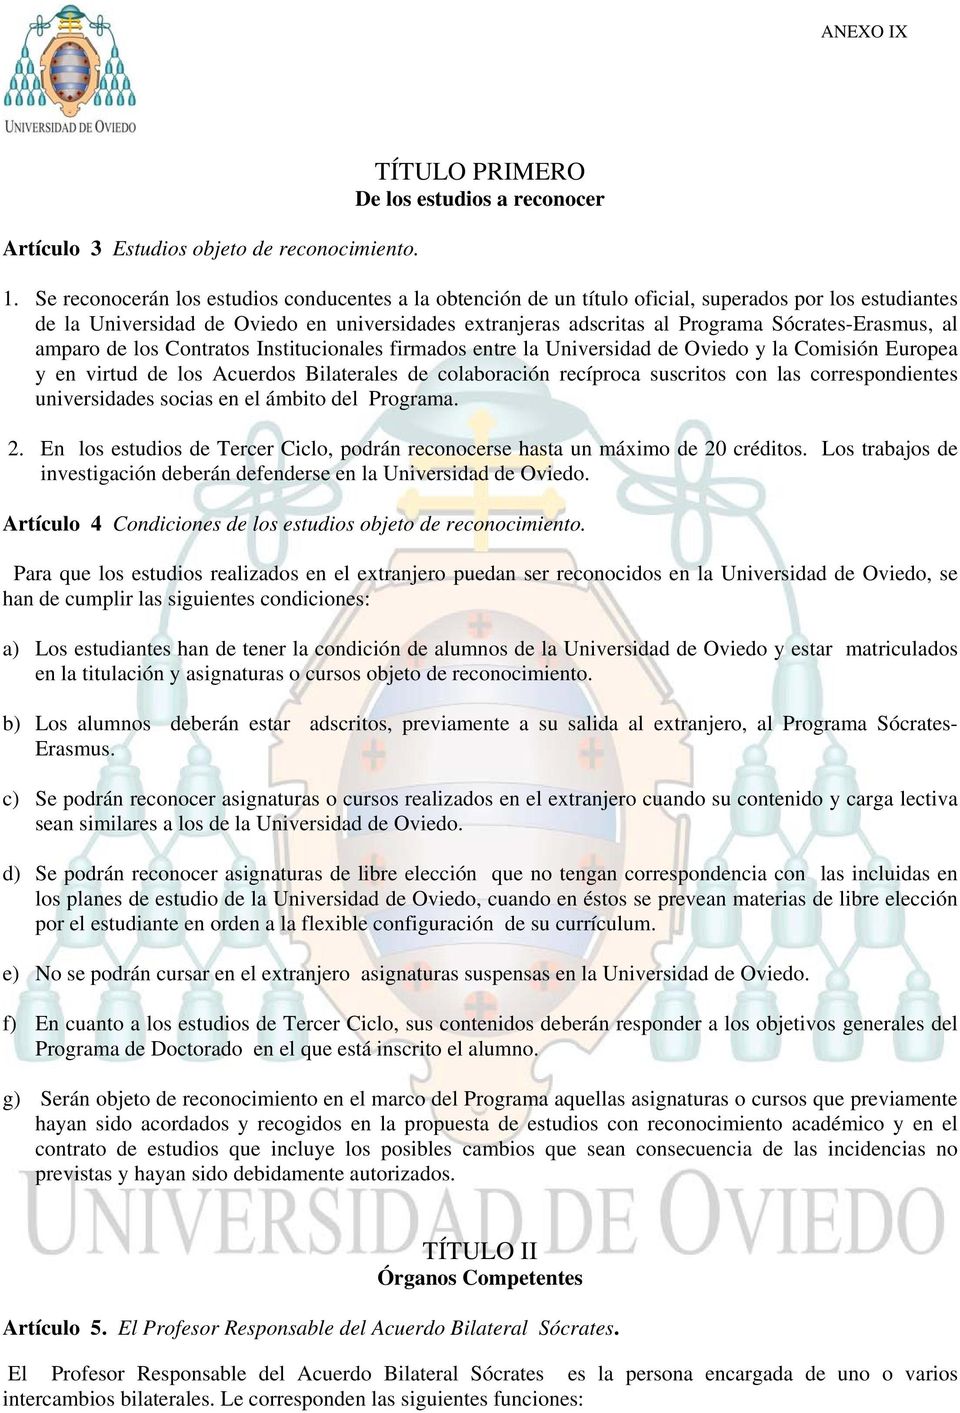 Sócrates-Erasmus, al amparo de los Contratos Institucionales firmados entre la Universidad de Oviedo y la Comisión Europea y en virtud de los Acuerdos Bilaterales de colaboración recíproca suscritos